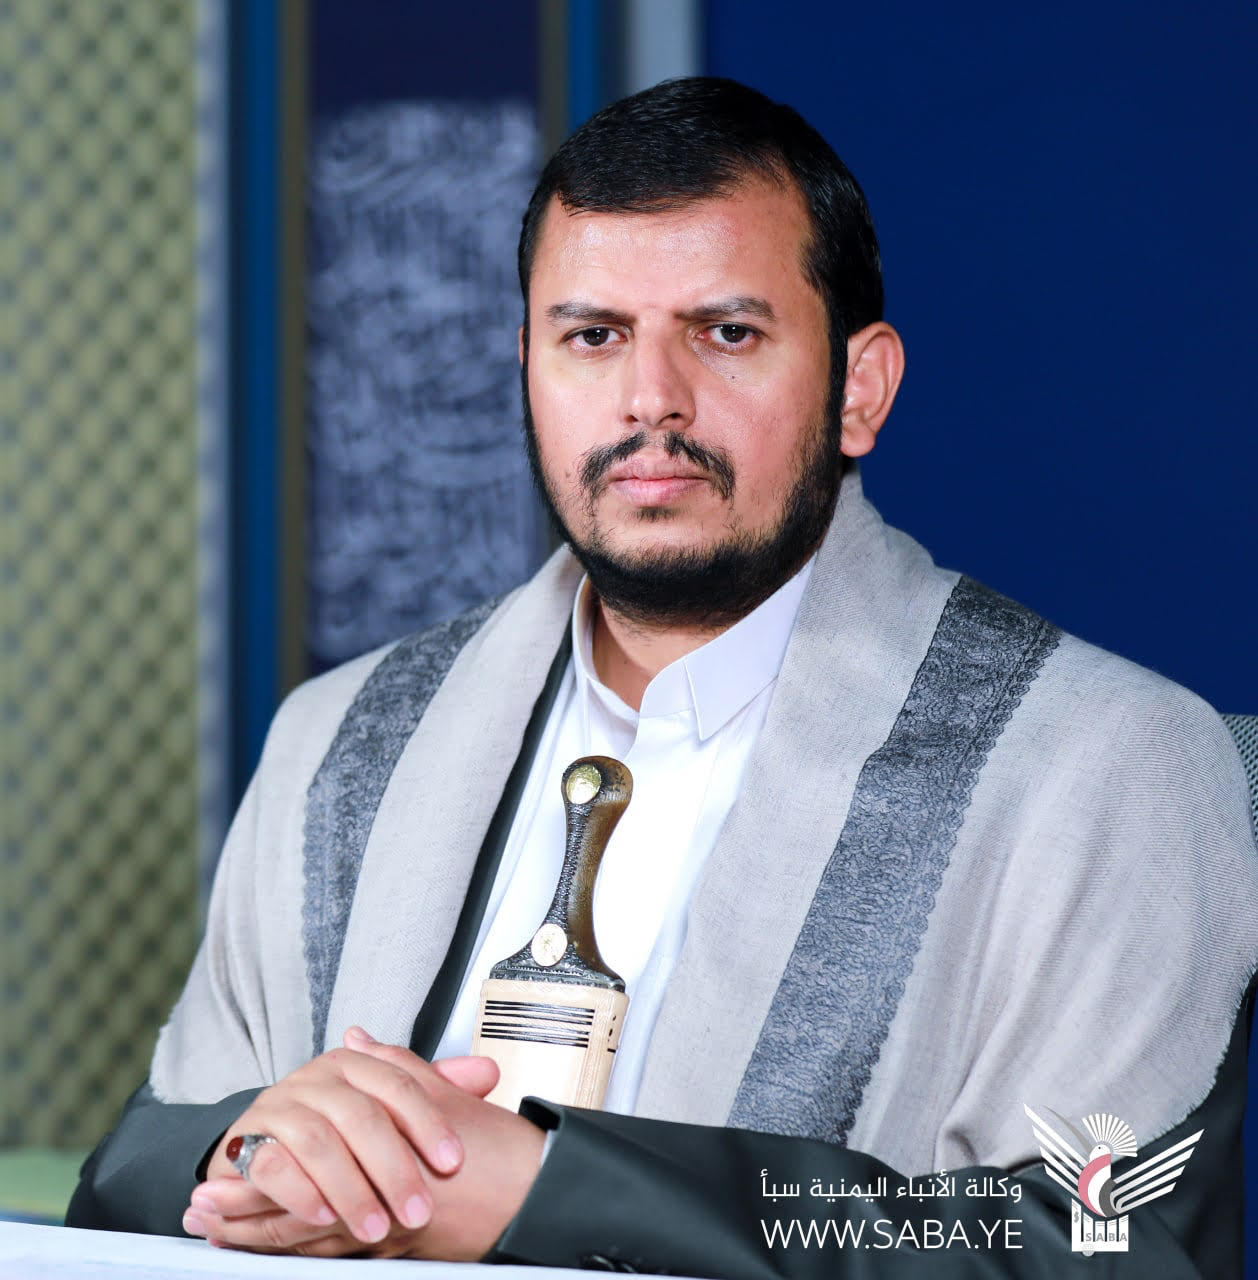 Le chef de la révolution remercie le peuple yéménite pour sa grande présence à l'occasion de la Journée internationale du Qods